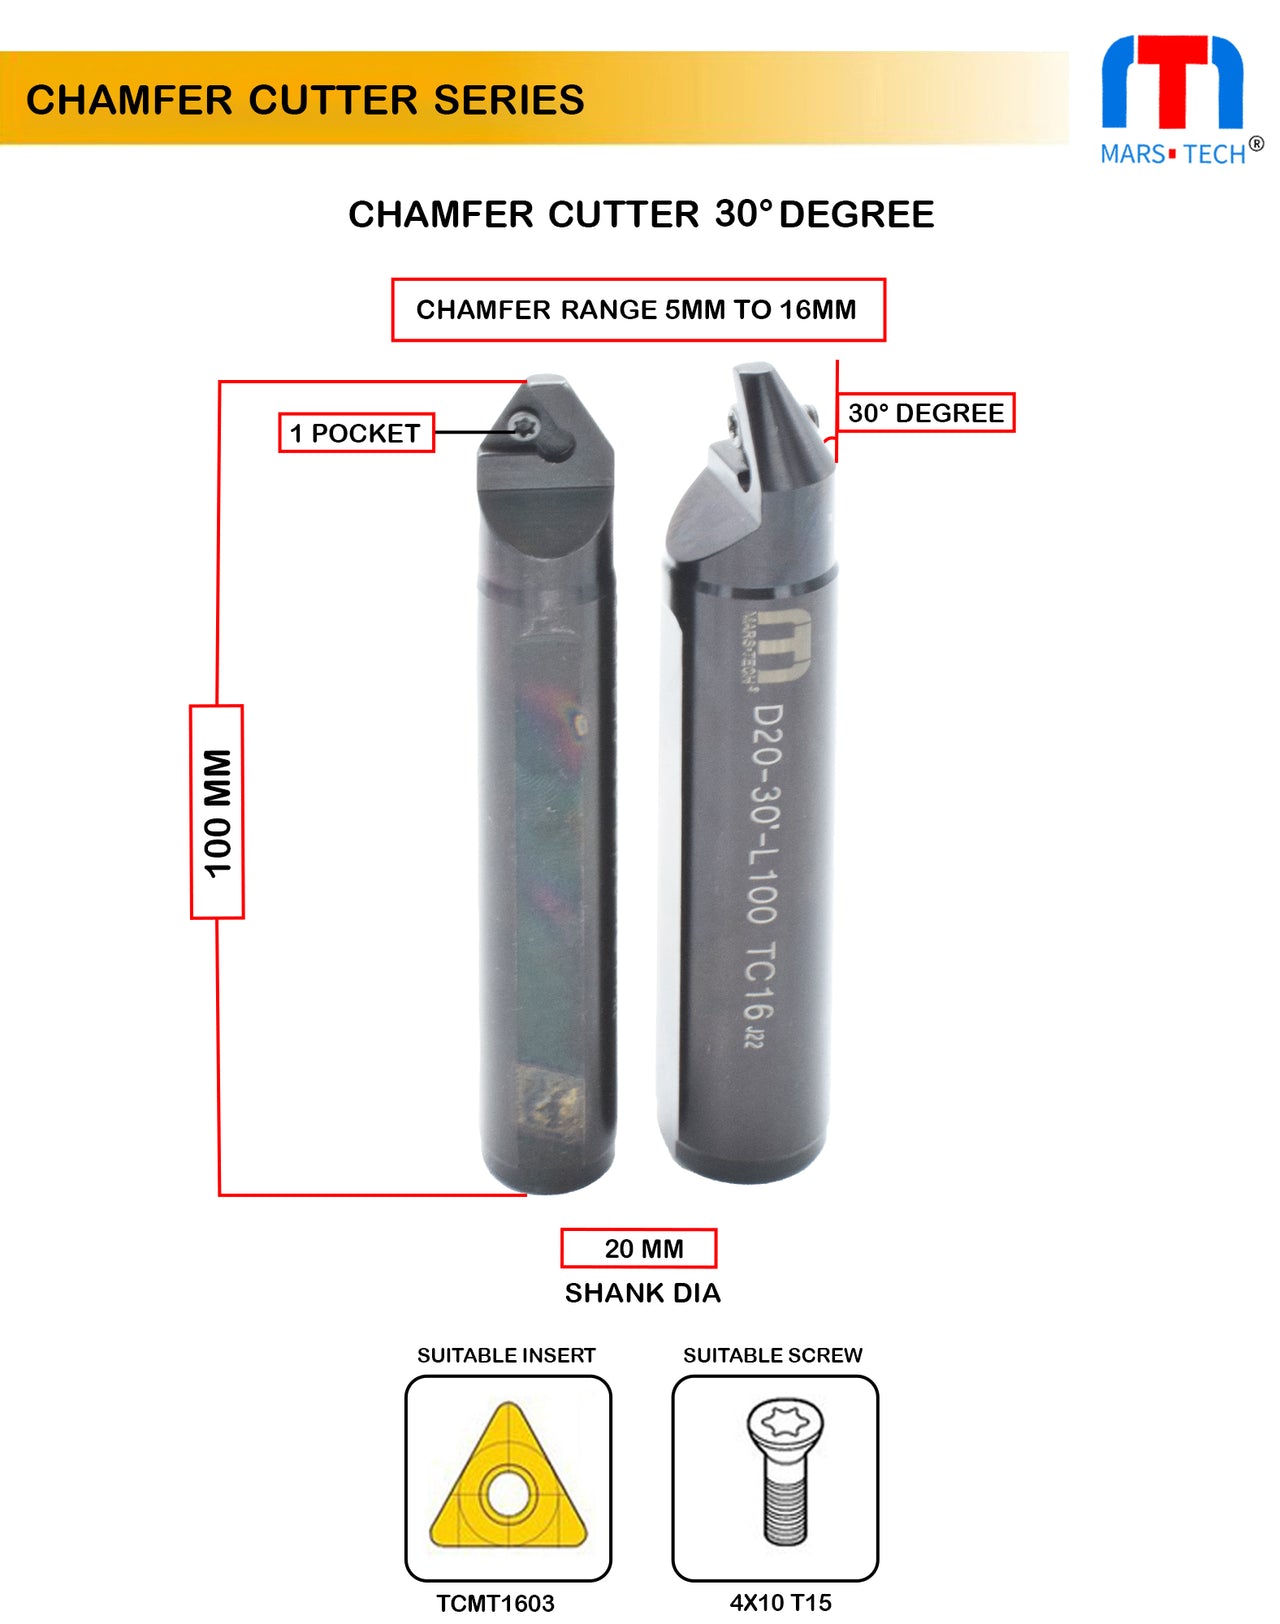 Chamfer Cutter 30 Degree 5-16mm range 20mm shank pack of 1